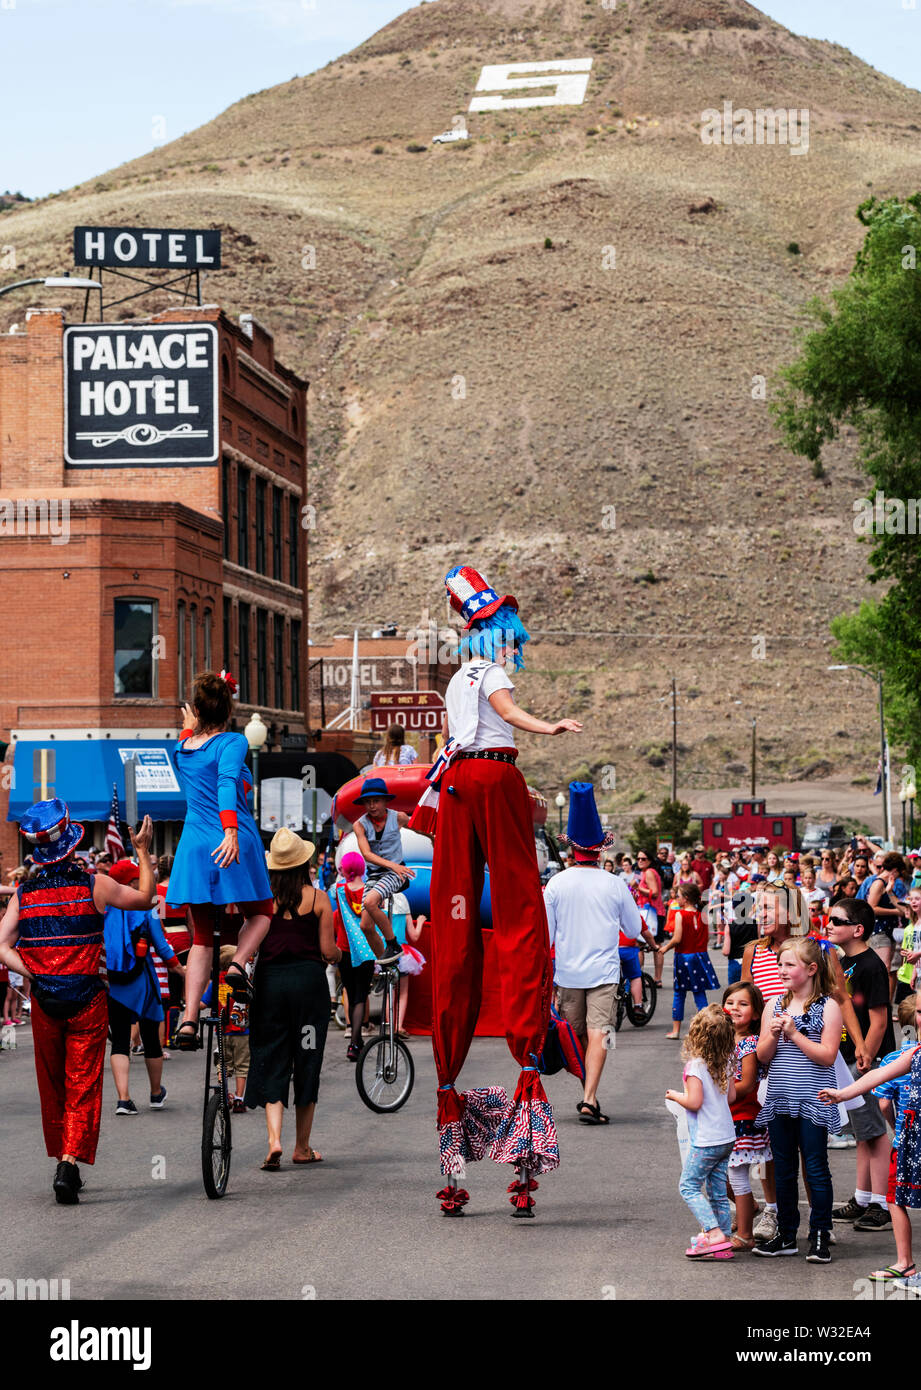 Femme sur pilotis ; École de cirque Salida ; quatrième de juillet Parade ; petite ville de montagne de Salida, Colorado, USA Banque D'Images